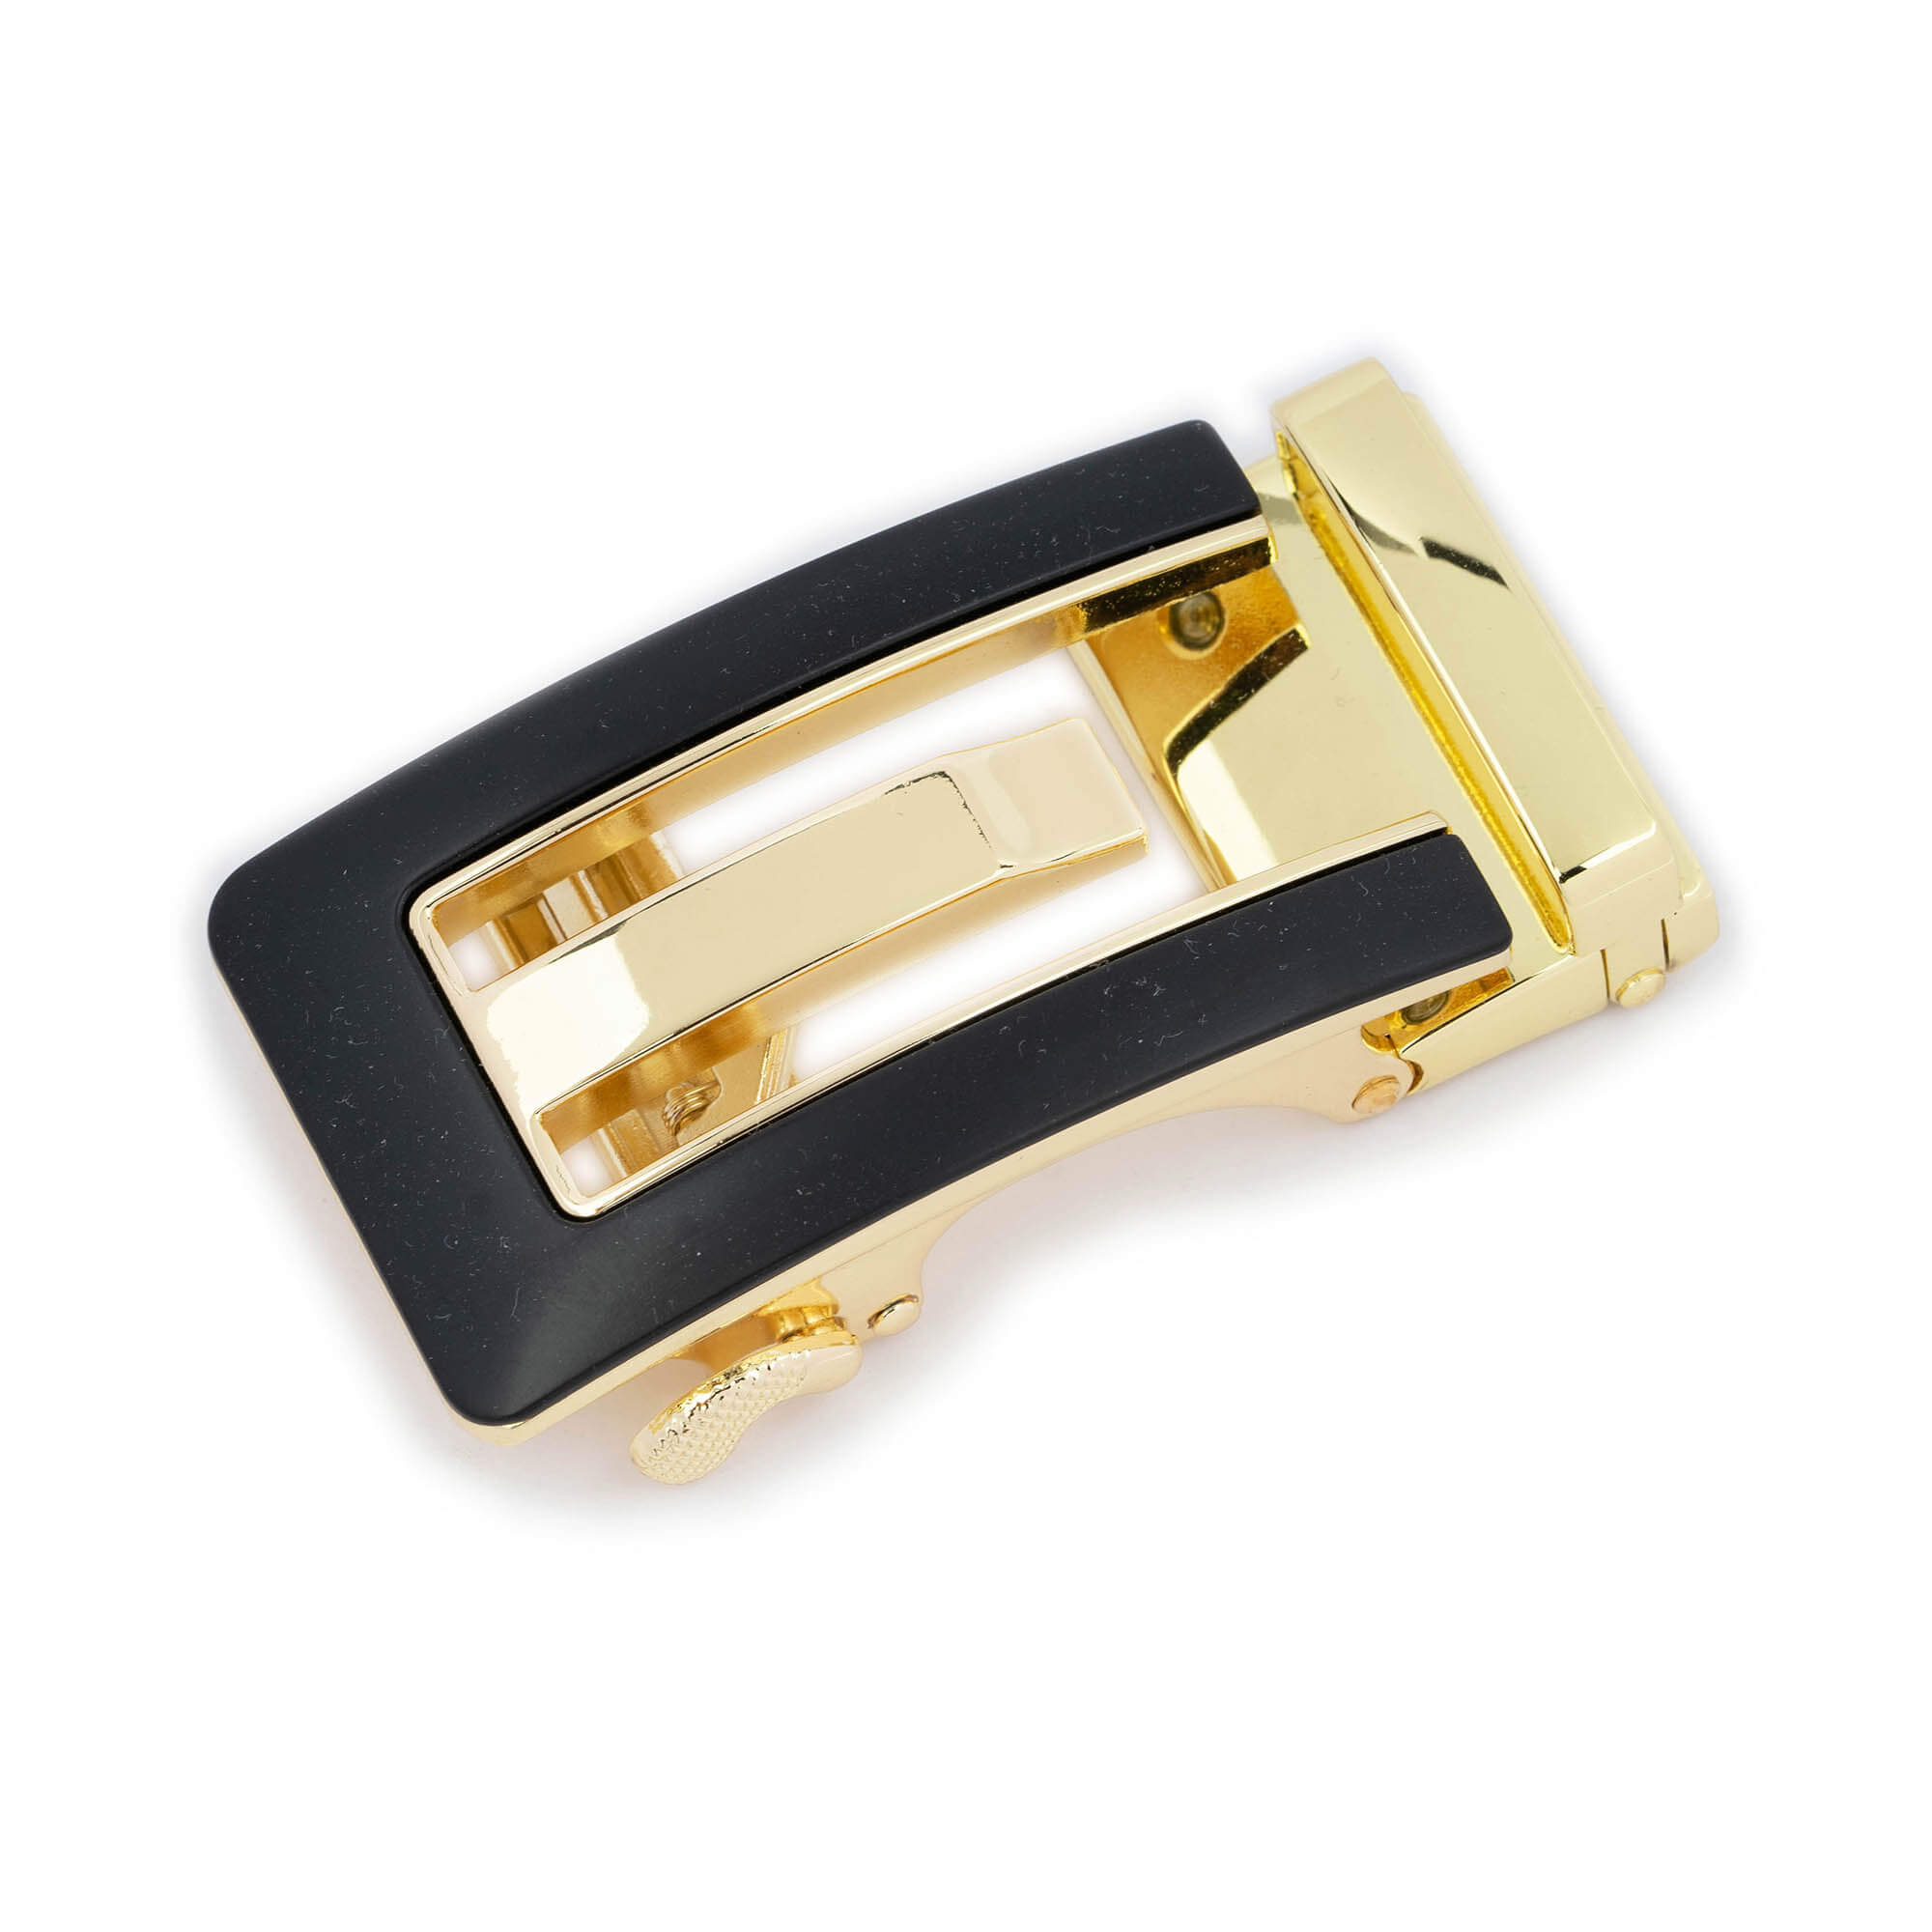 Golf Belt Buckle - Men's Ratchet Belt - Antiqued Gold, 1.25